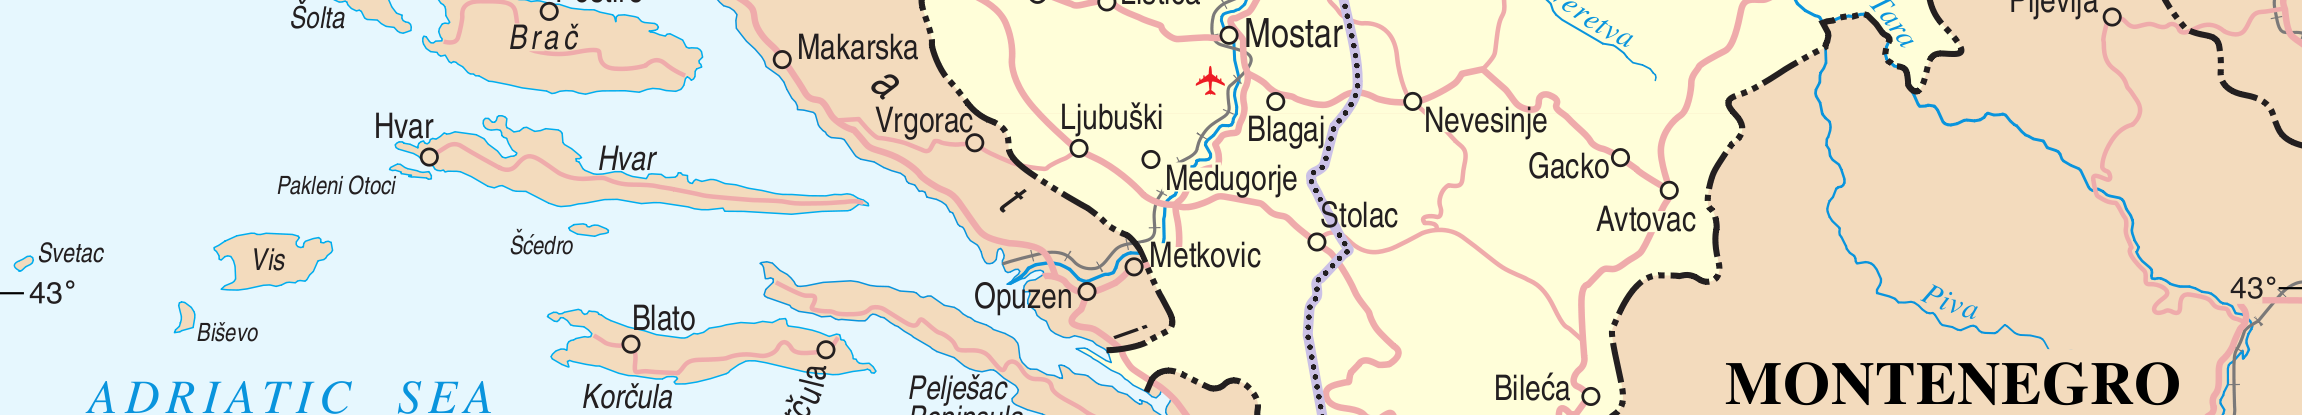 1. sz. ábra: Bosznia-Hercegovina térképe (http://www.un.org/depts/cartographic/map/profile/bosnia.